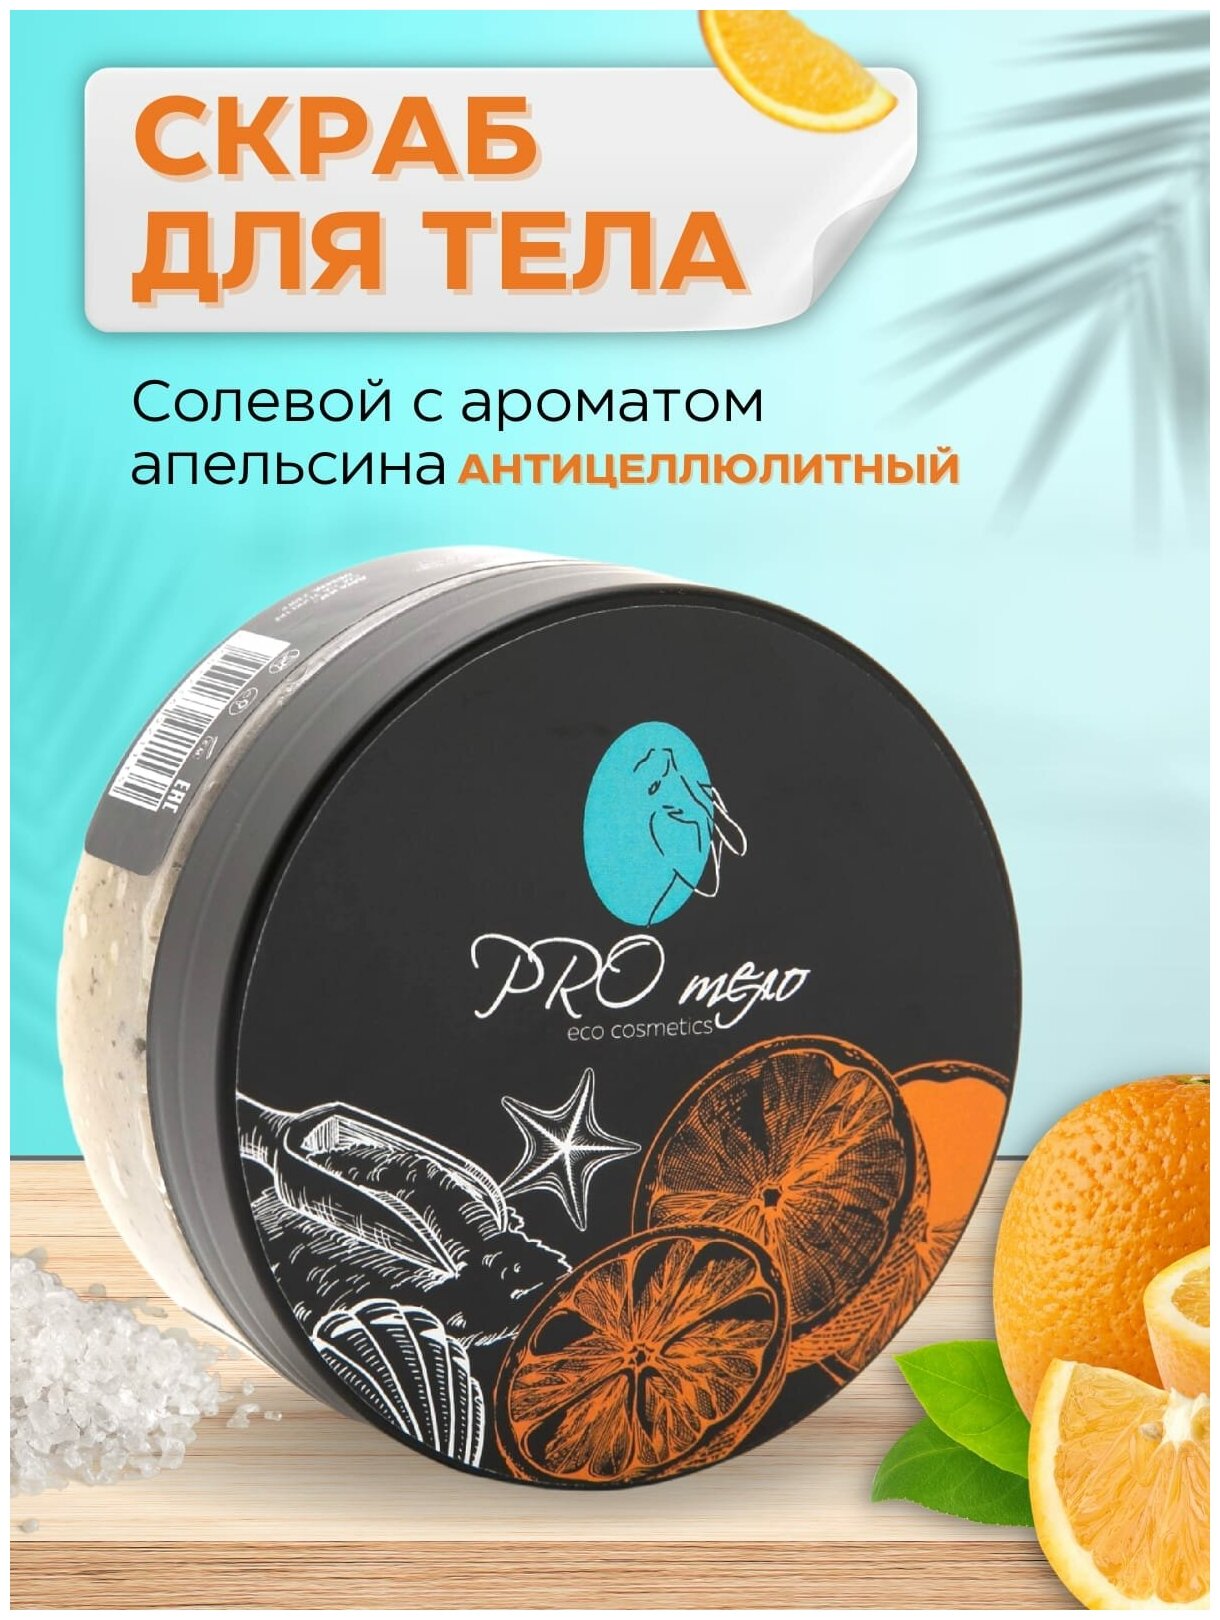 Антициллюлитный Скраб для тела солевой натуральный с ароматом апельсина и маслом кокоса